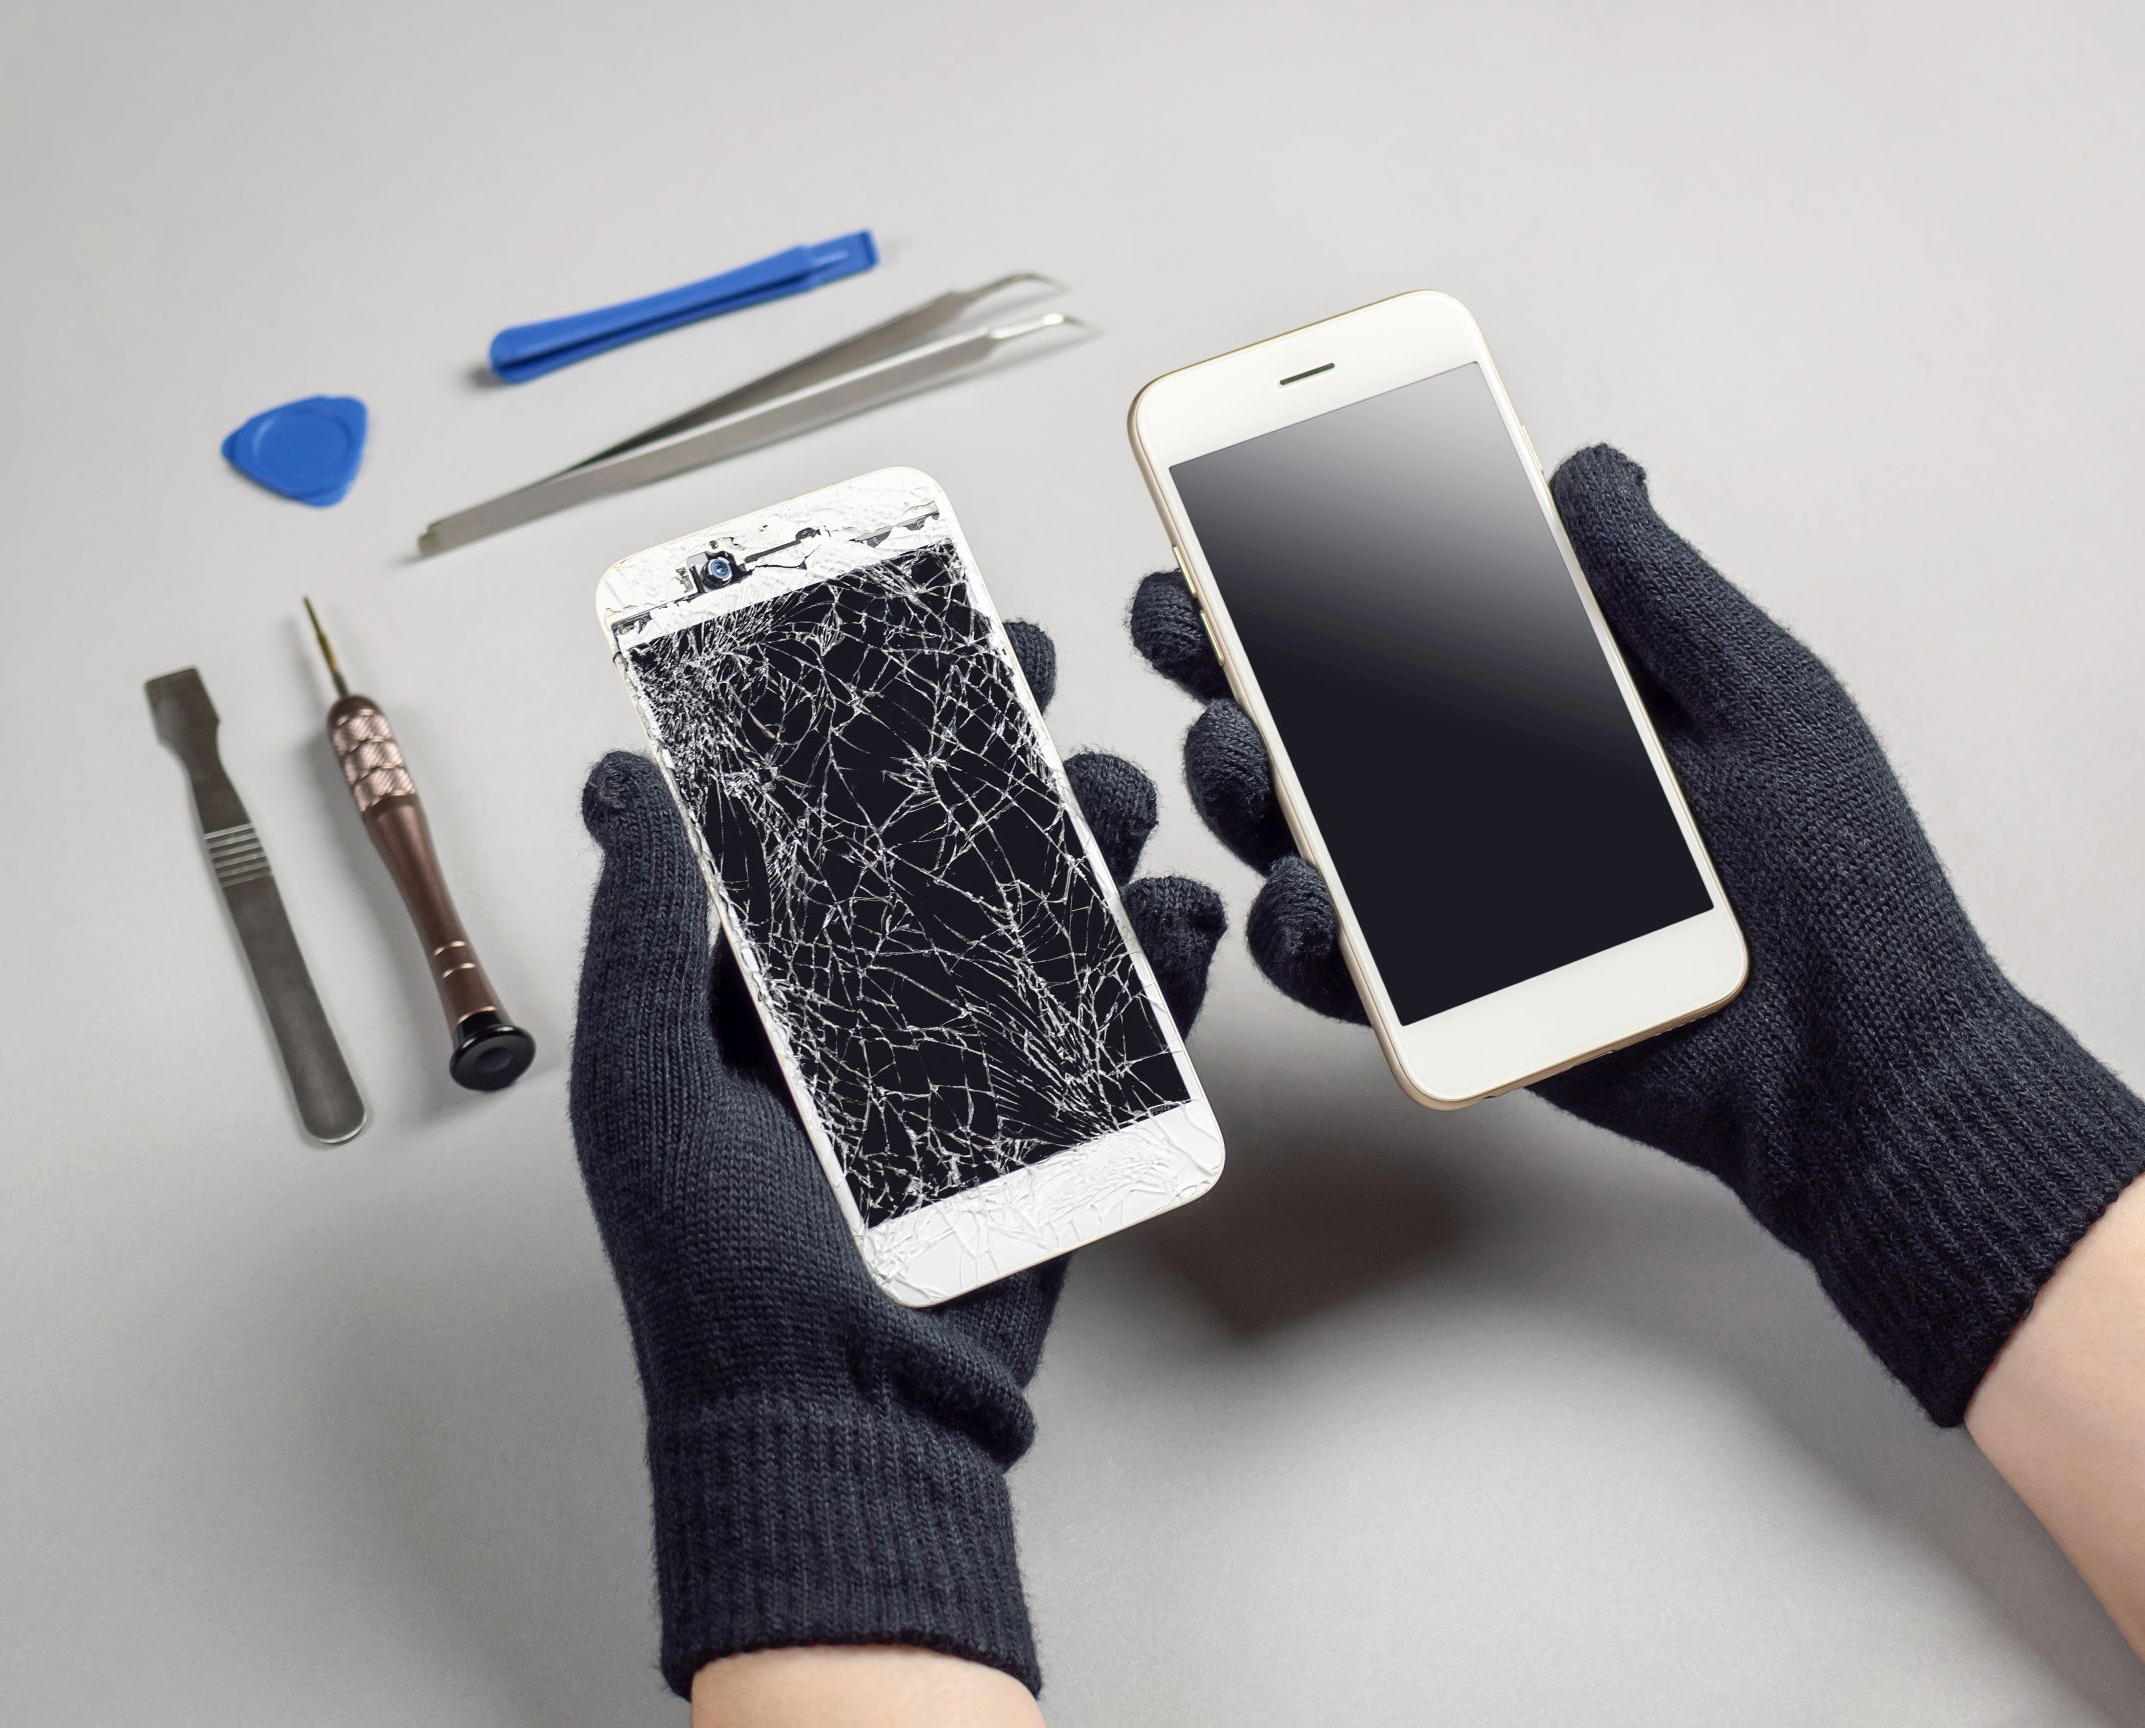 Touchscreen kaputt Handy runtergefallen Glas defekt wir reparieren schnell und zuverlaessig